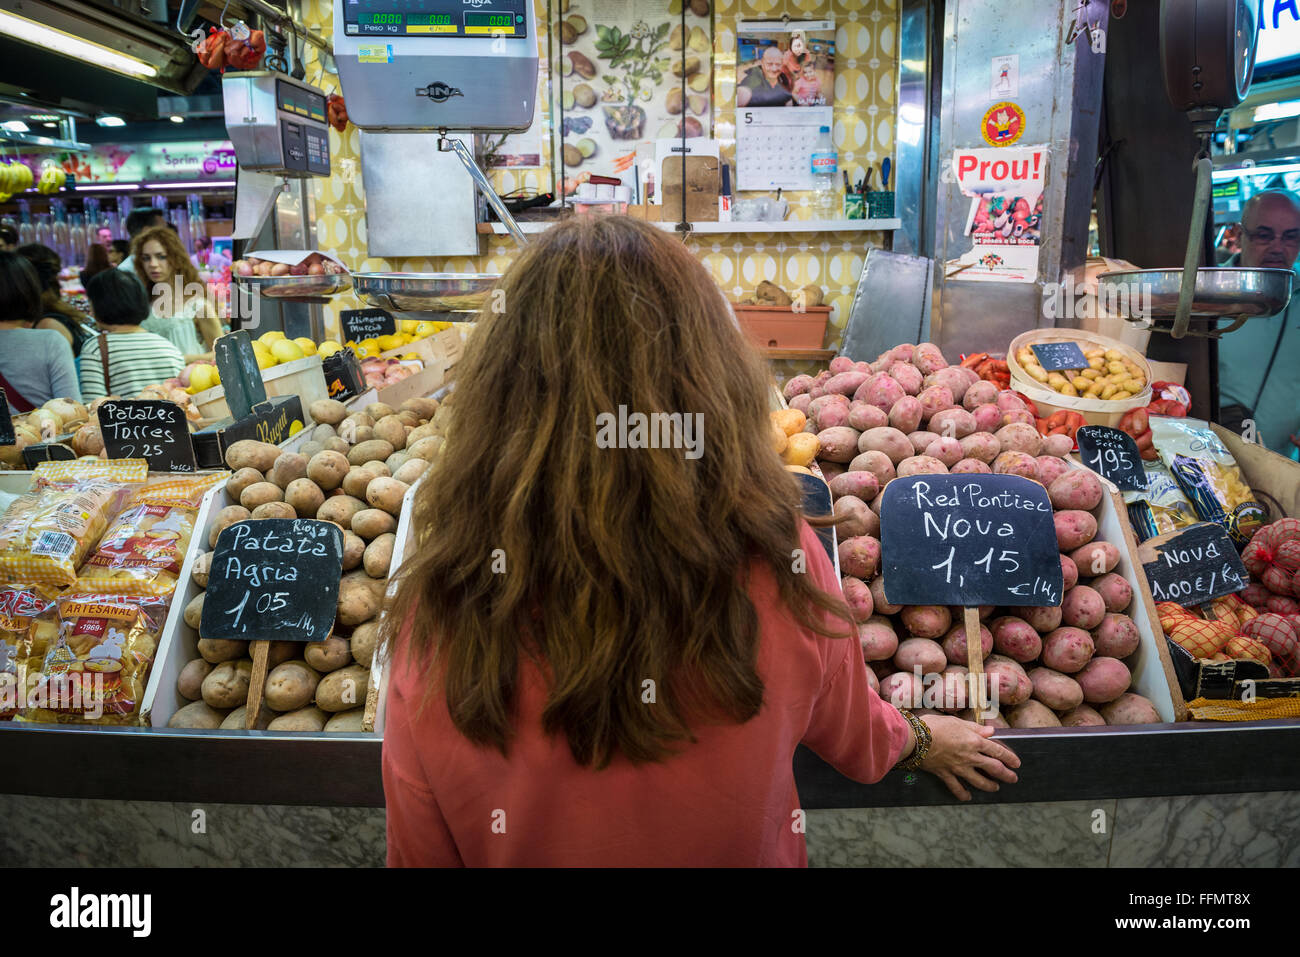 a lot of varieties of potatoes for sale at Mercat de Sant Josep de la Boqueria - famous market, Ciutat Vella, Barcelona, Spain Stock Photo